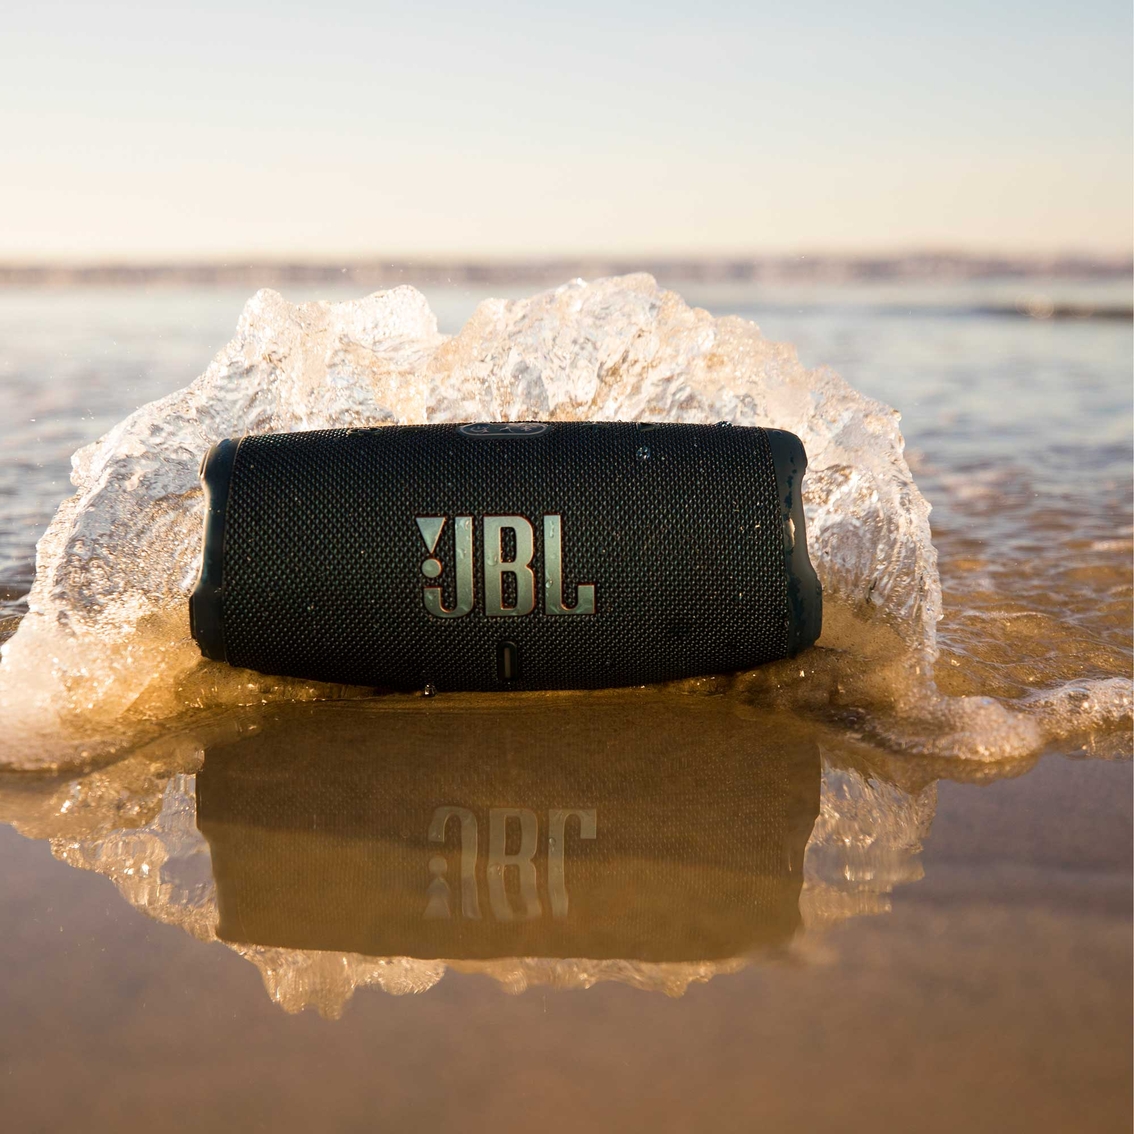 JBL Charge 5 BT Speaker - Black JBLCHARGE5BLKAM - The Home Depot